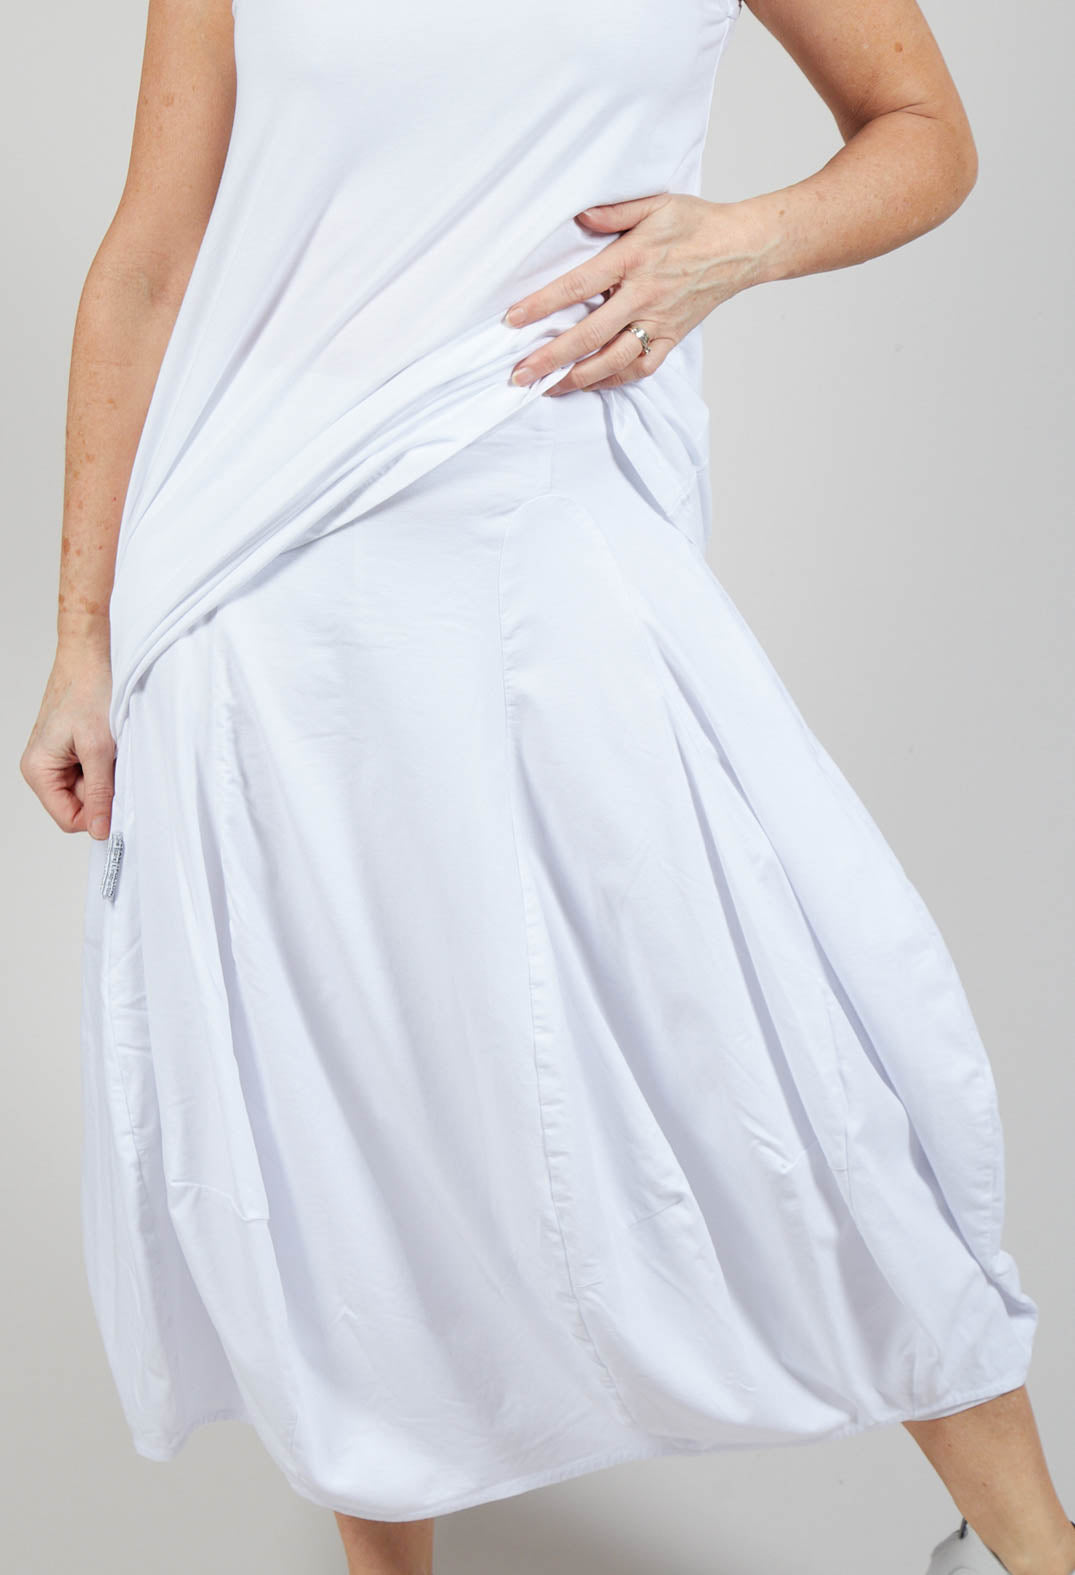 Tulip Hem Jersey Skirt in White